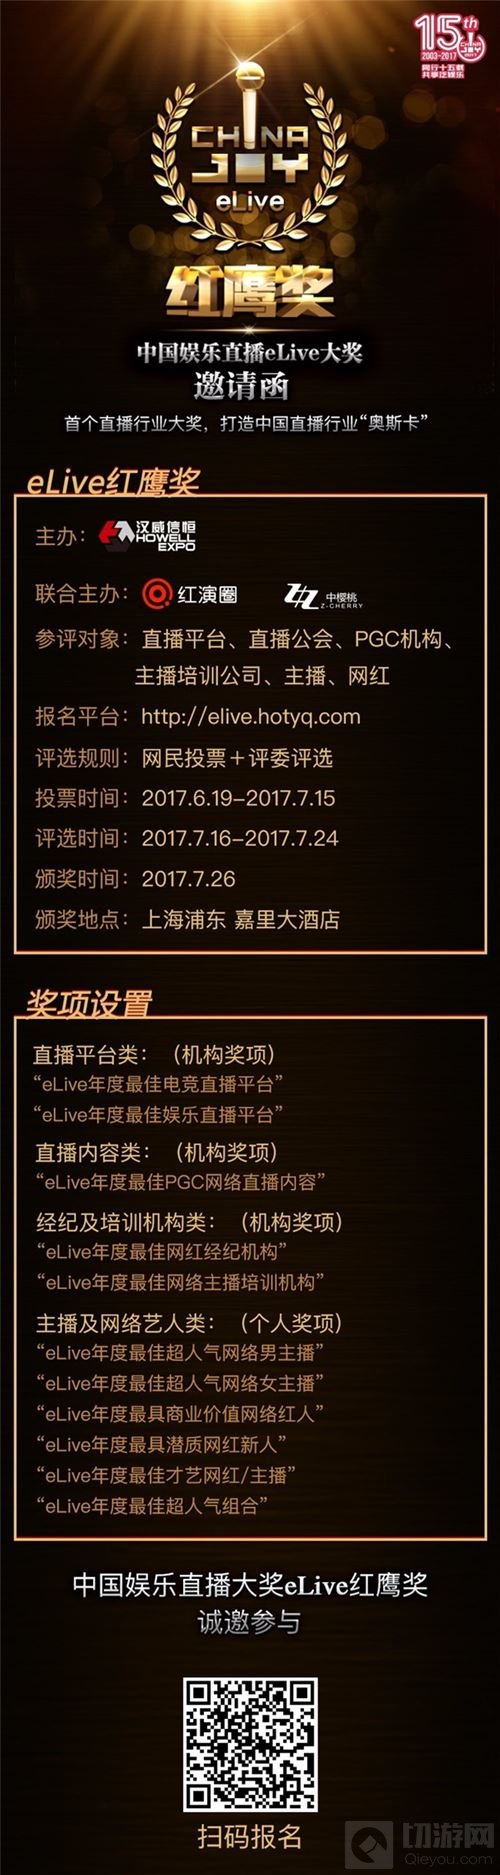 2017中国娱乐直播eLive红鹰奖网红及直播平台报名启动